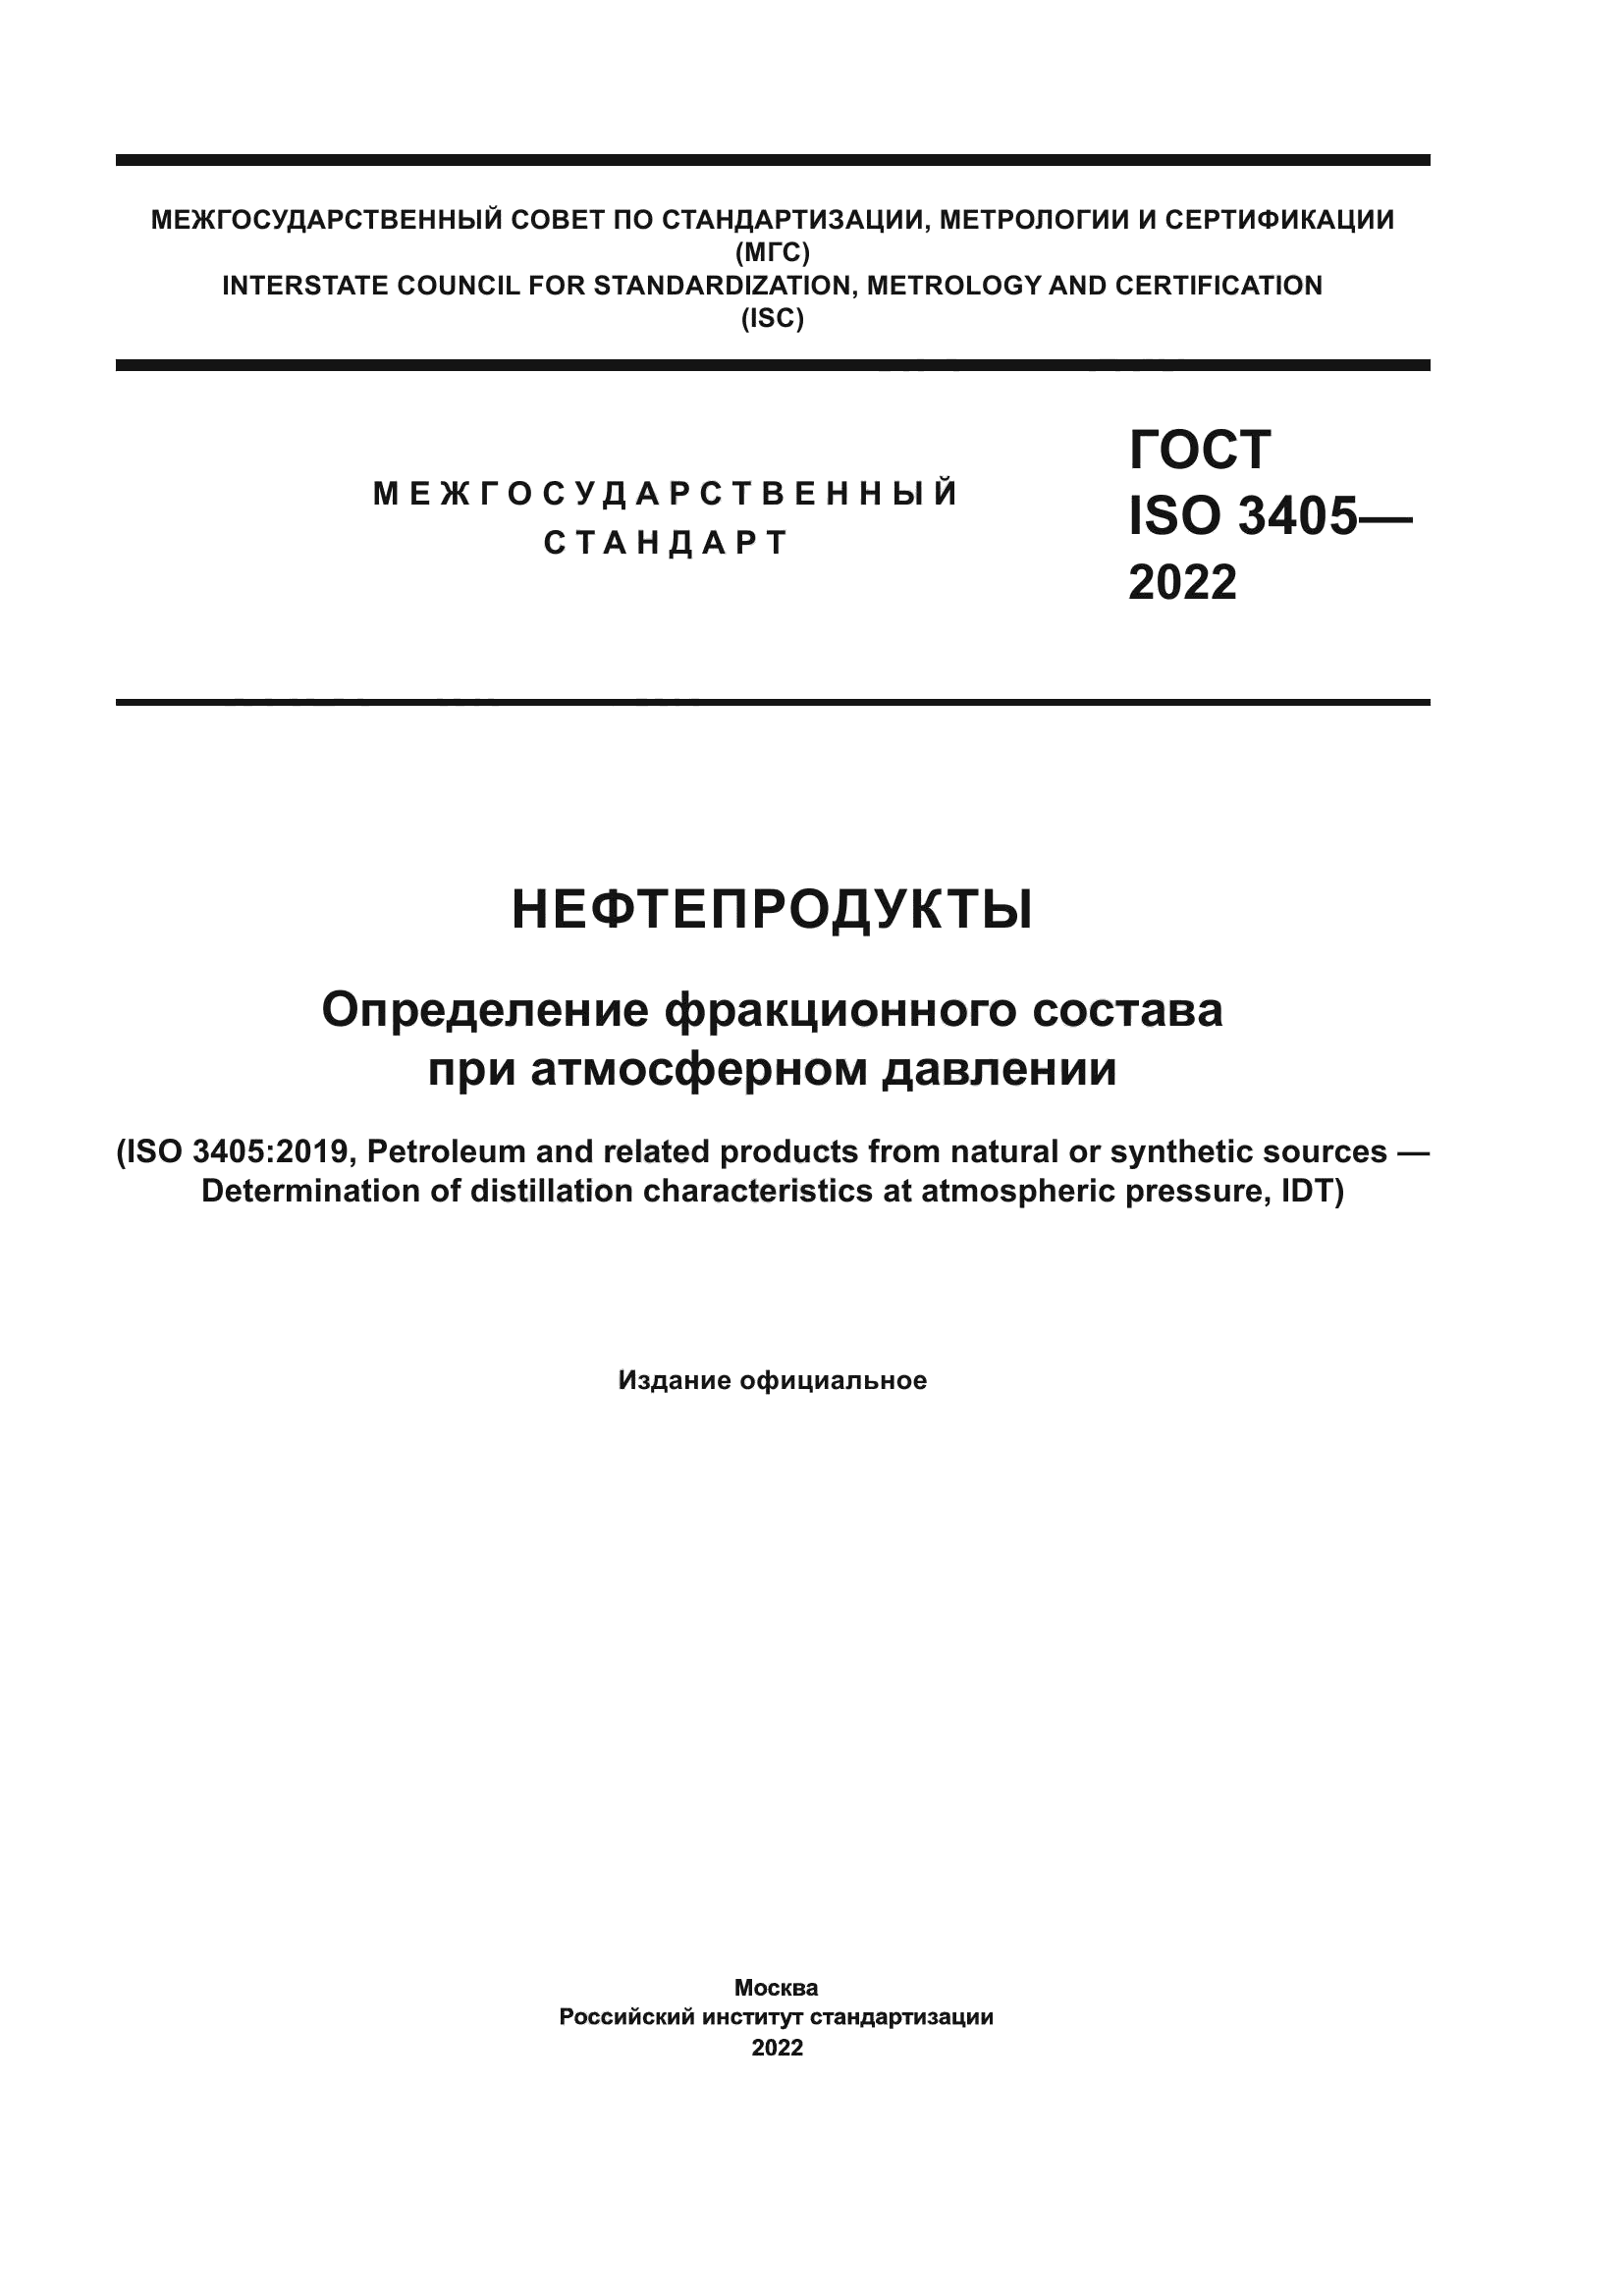 ГОСТ ISO 3405-2022